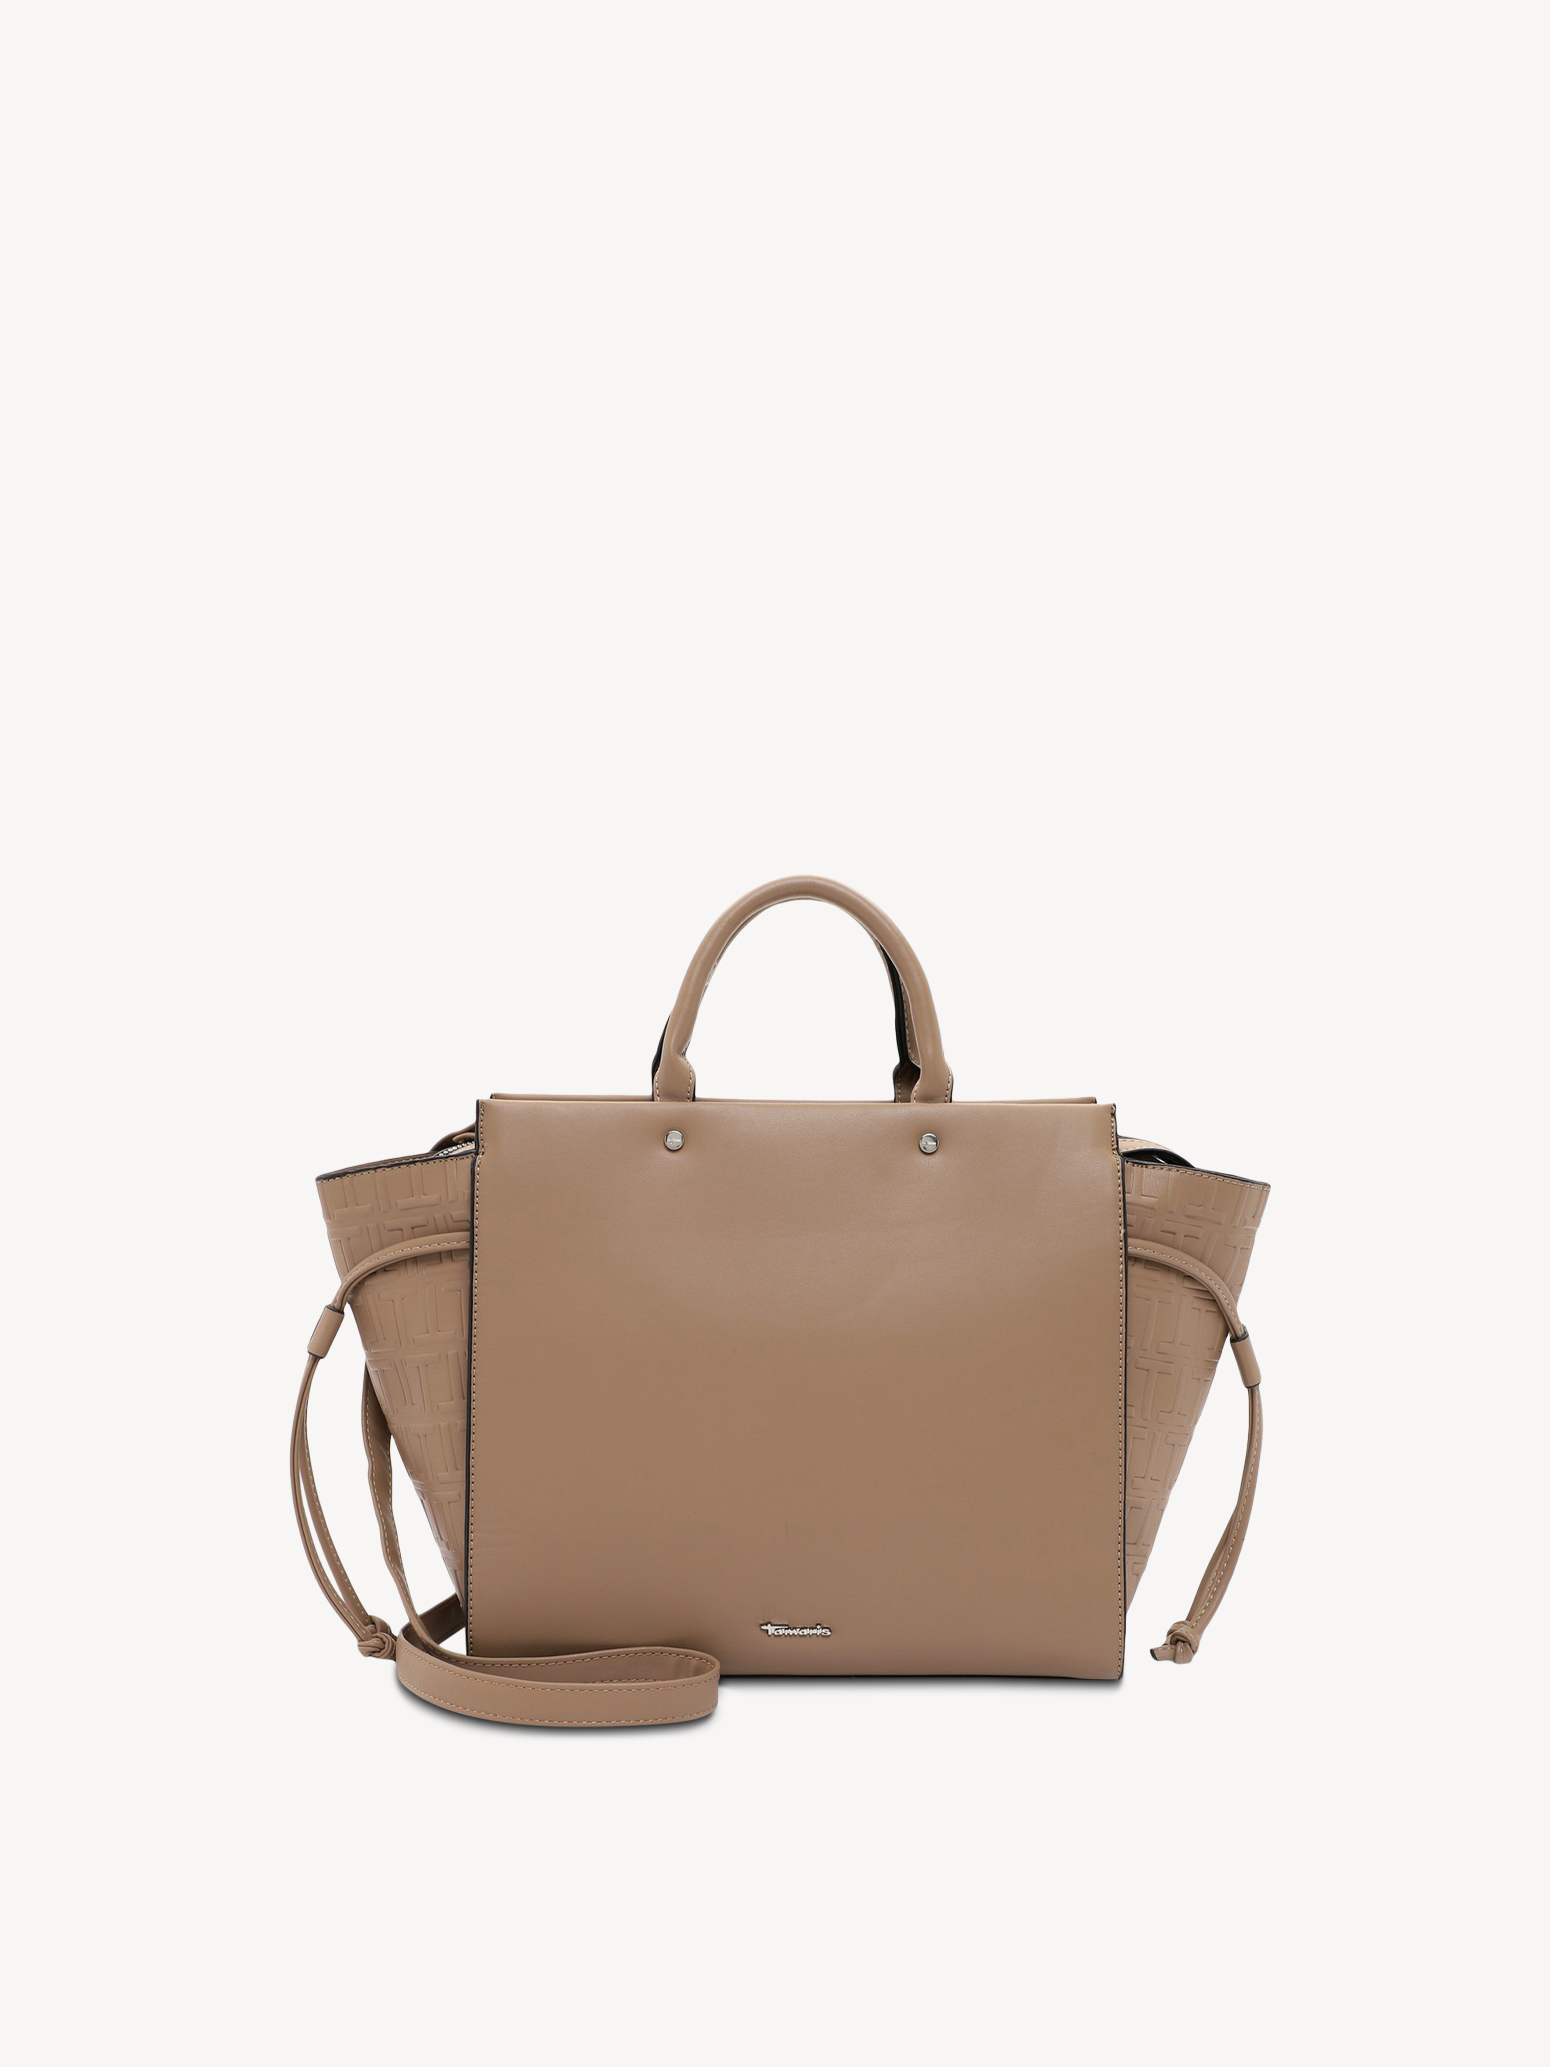 Shopping bag - brown